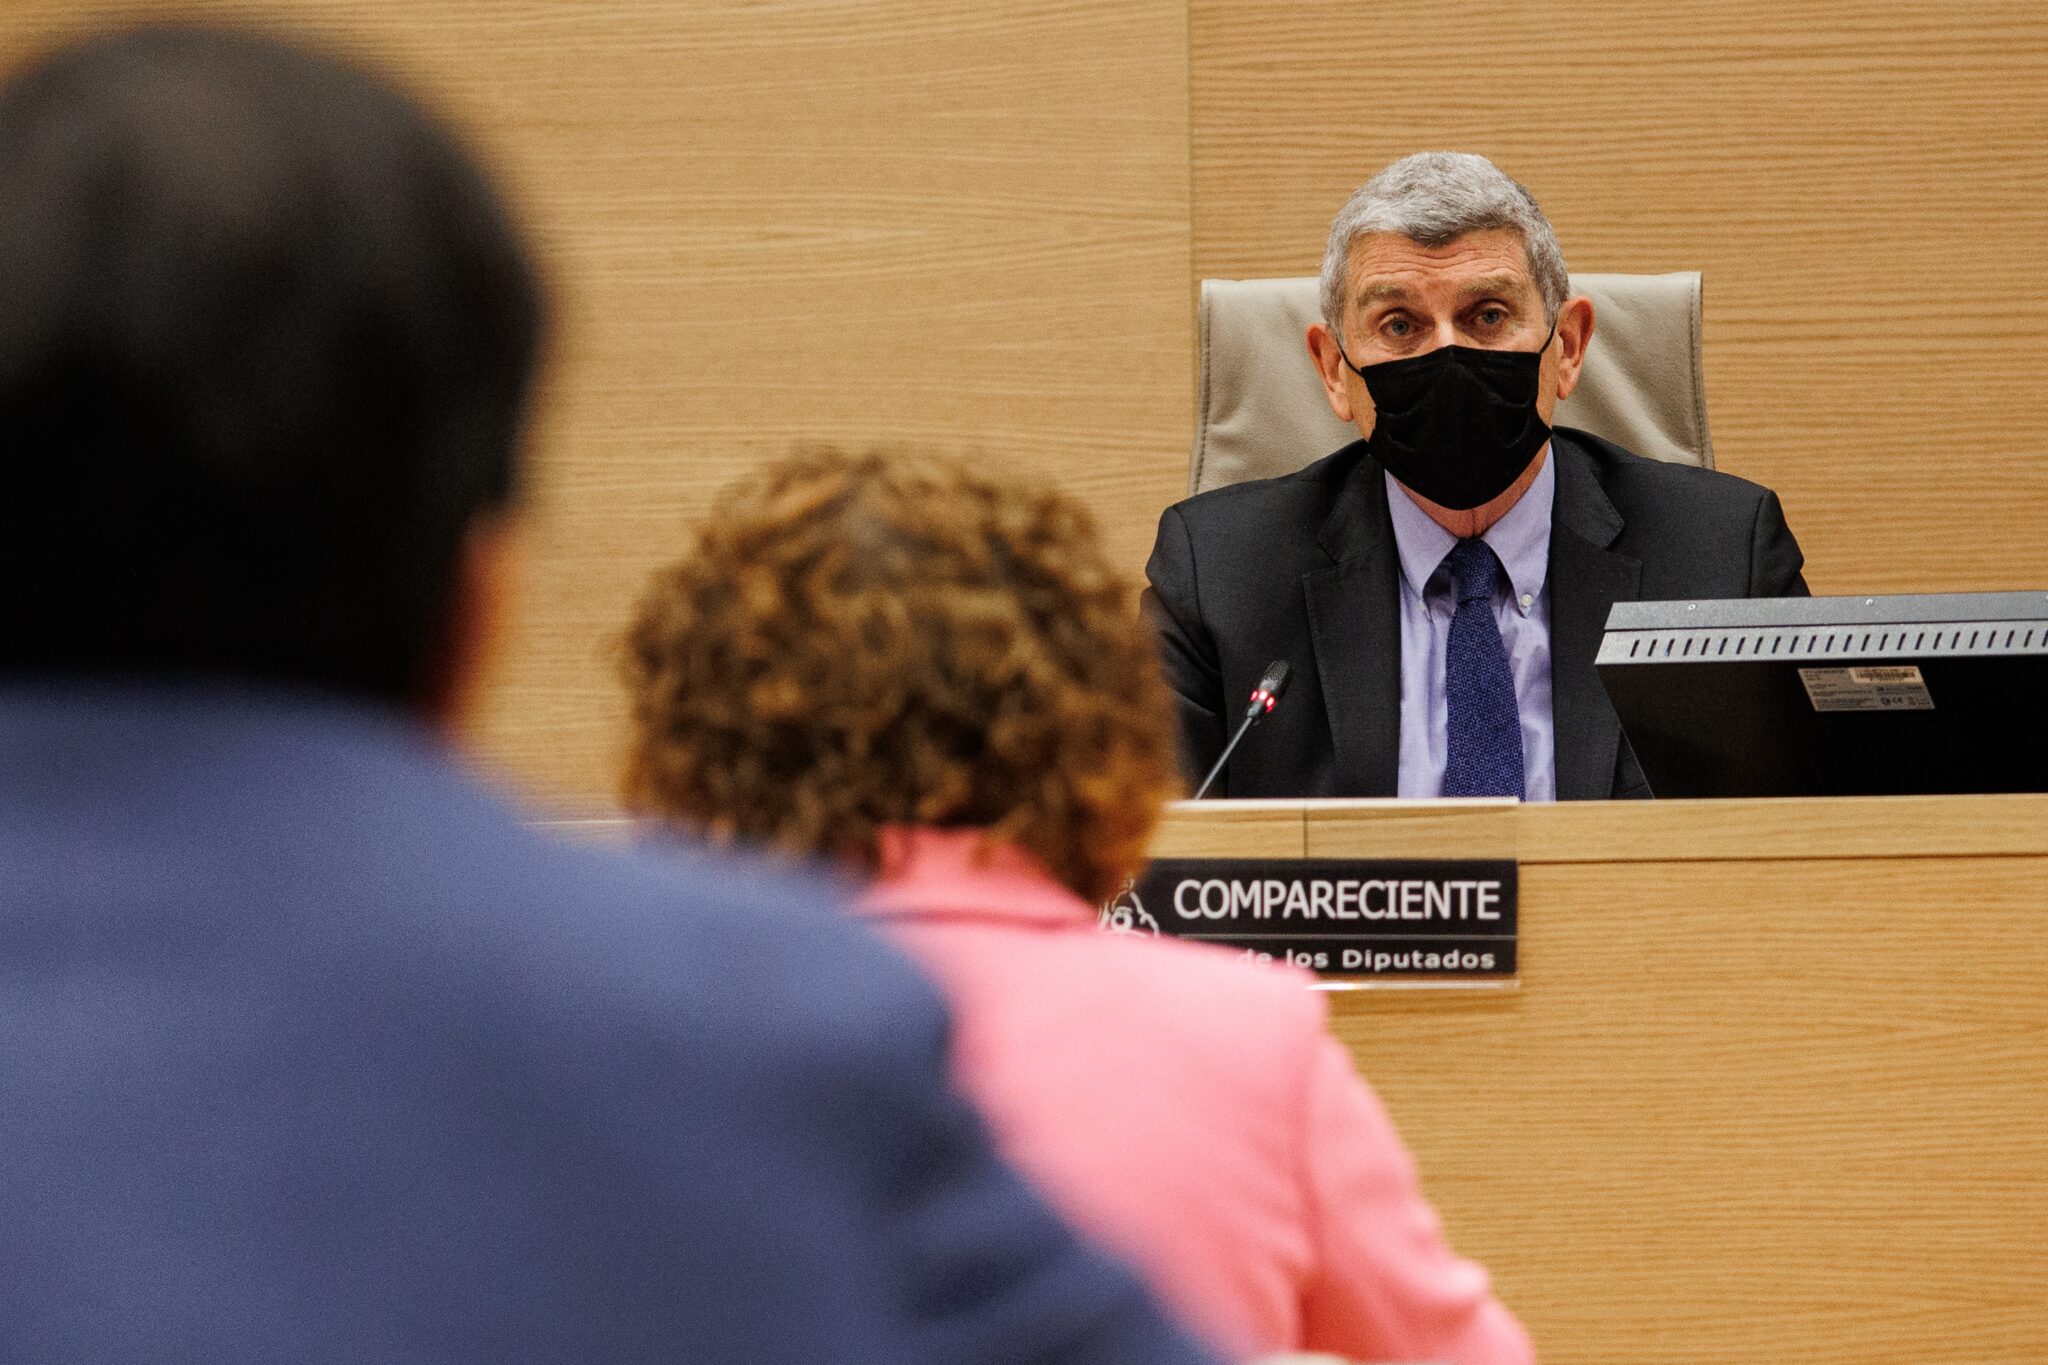 El presidente de la Corporación RTVE, José Manuel Pérez Tornero, comparece en la Comisión Mixta de Control Parlamentario de la Corporación RTVE y sus Sociedades, en el Congreso de los Diputados